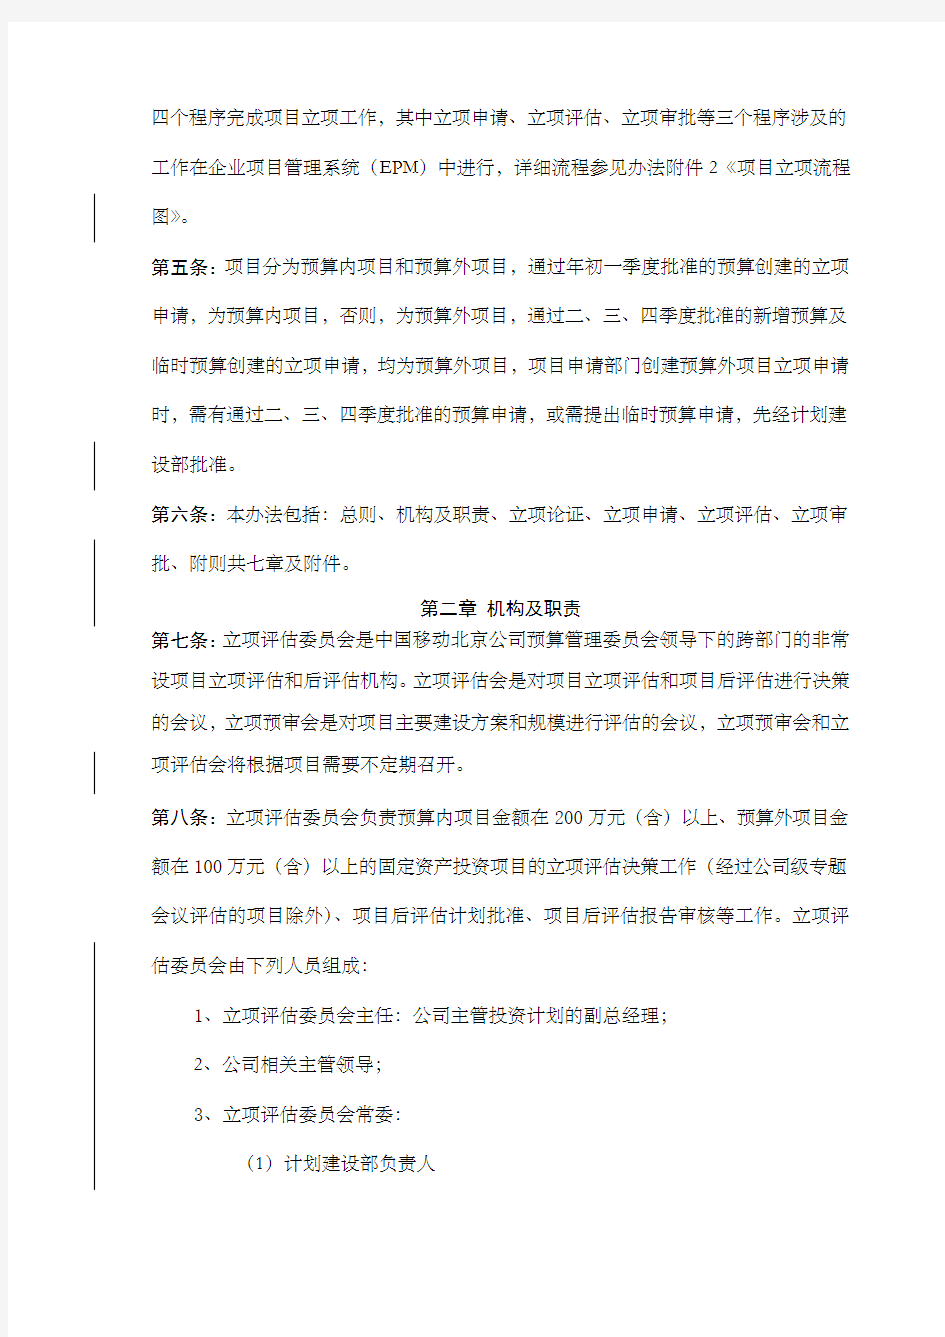 中国移动通信集团北京公司固定资产投资项目立项管理办法